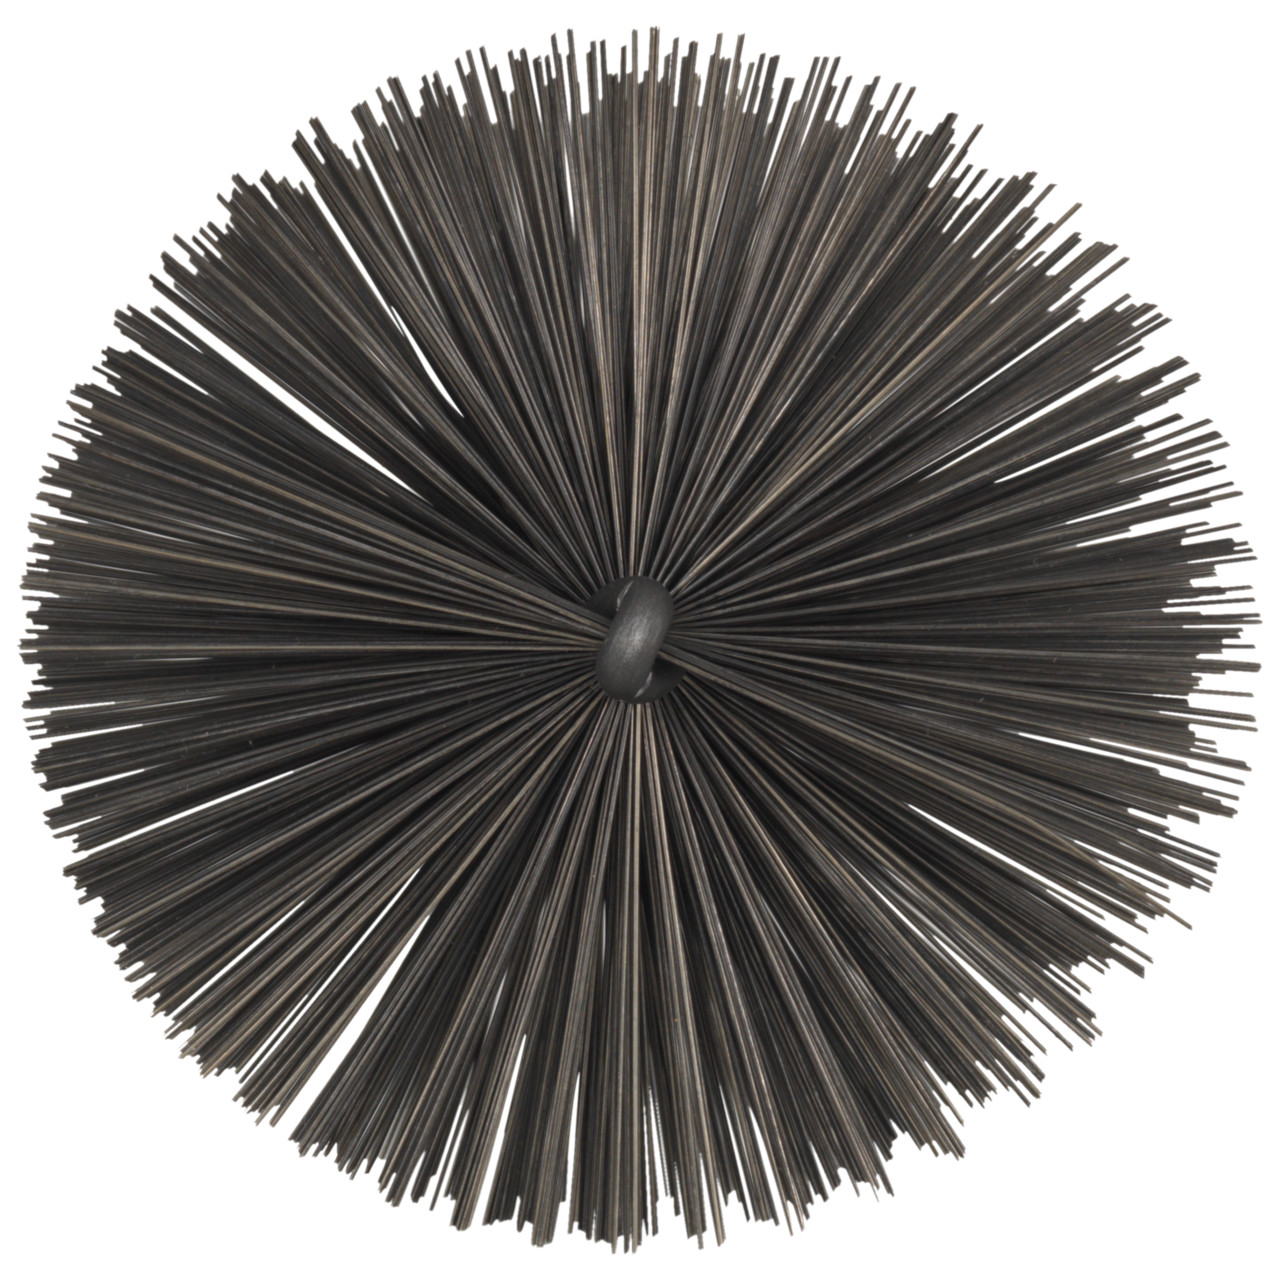 Tyrolit Brosse tubulaire avec filetage extérieur DxGE-I 25xW1/2-150 Pour l'acier, forme : 18ROGDG - (brosse tubulaire), art. 34203601